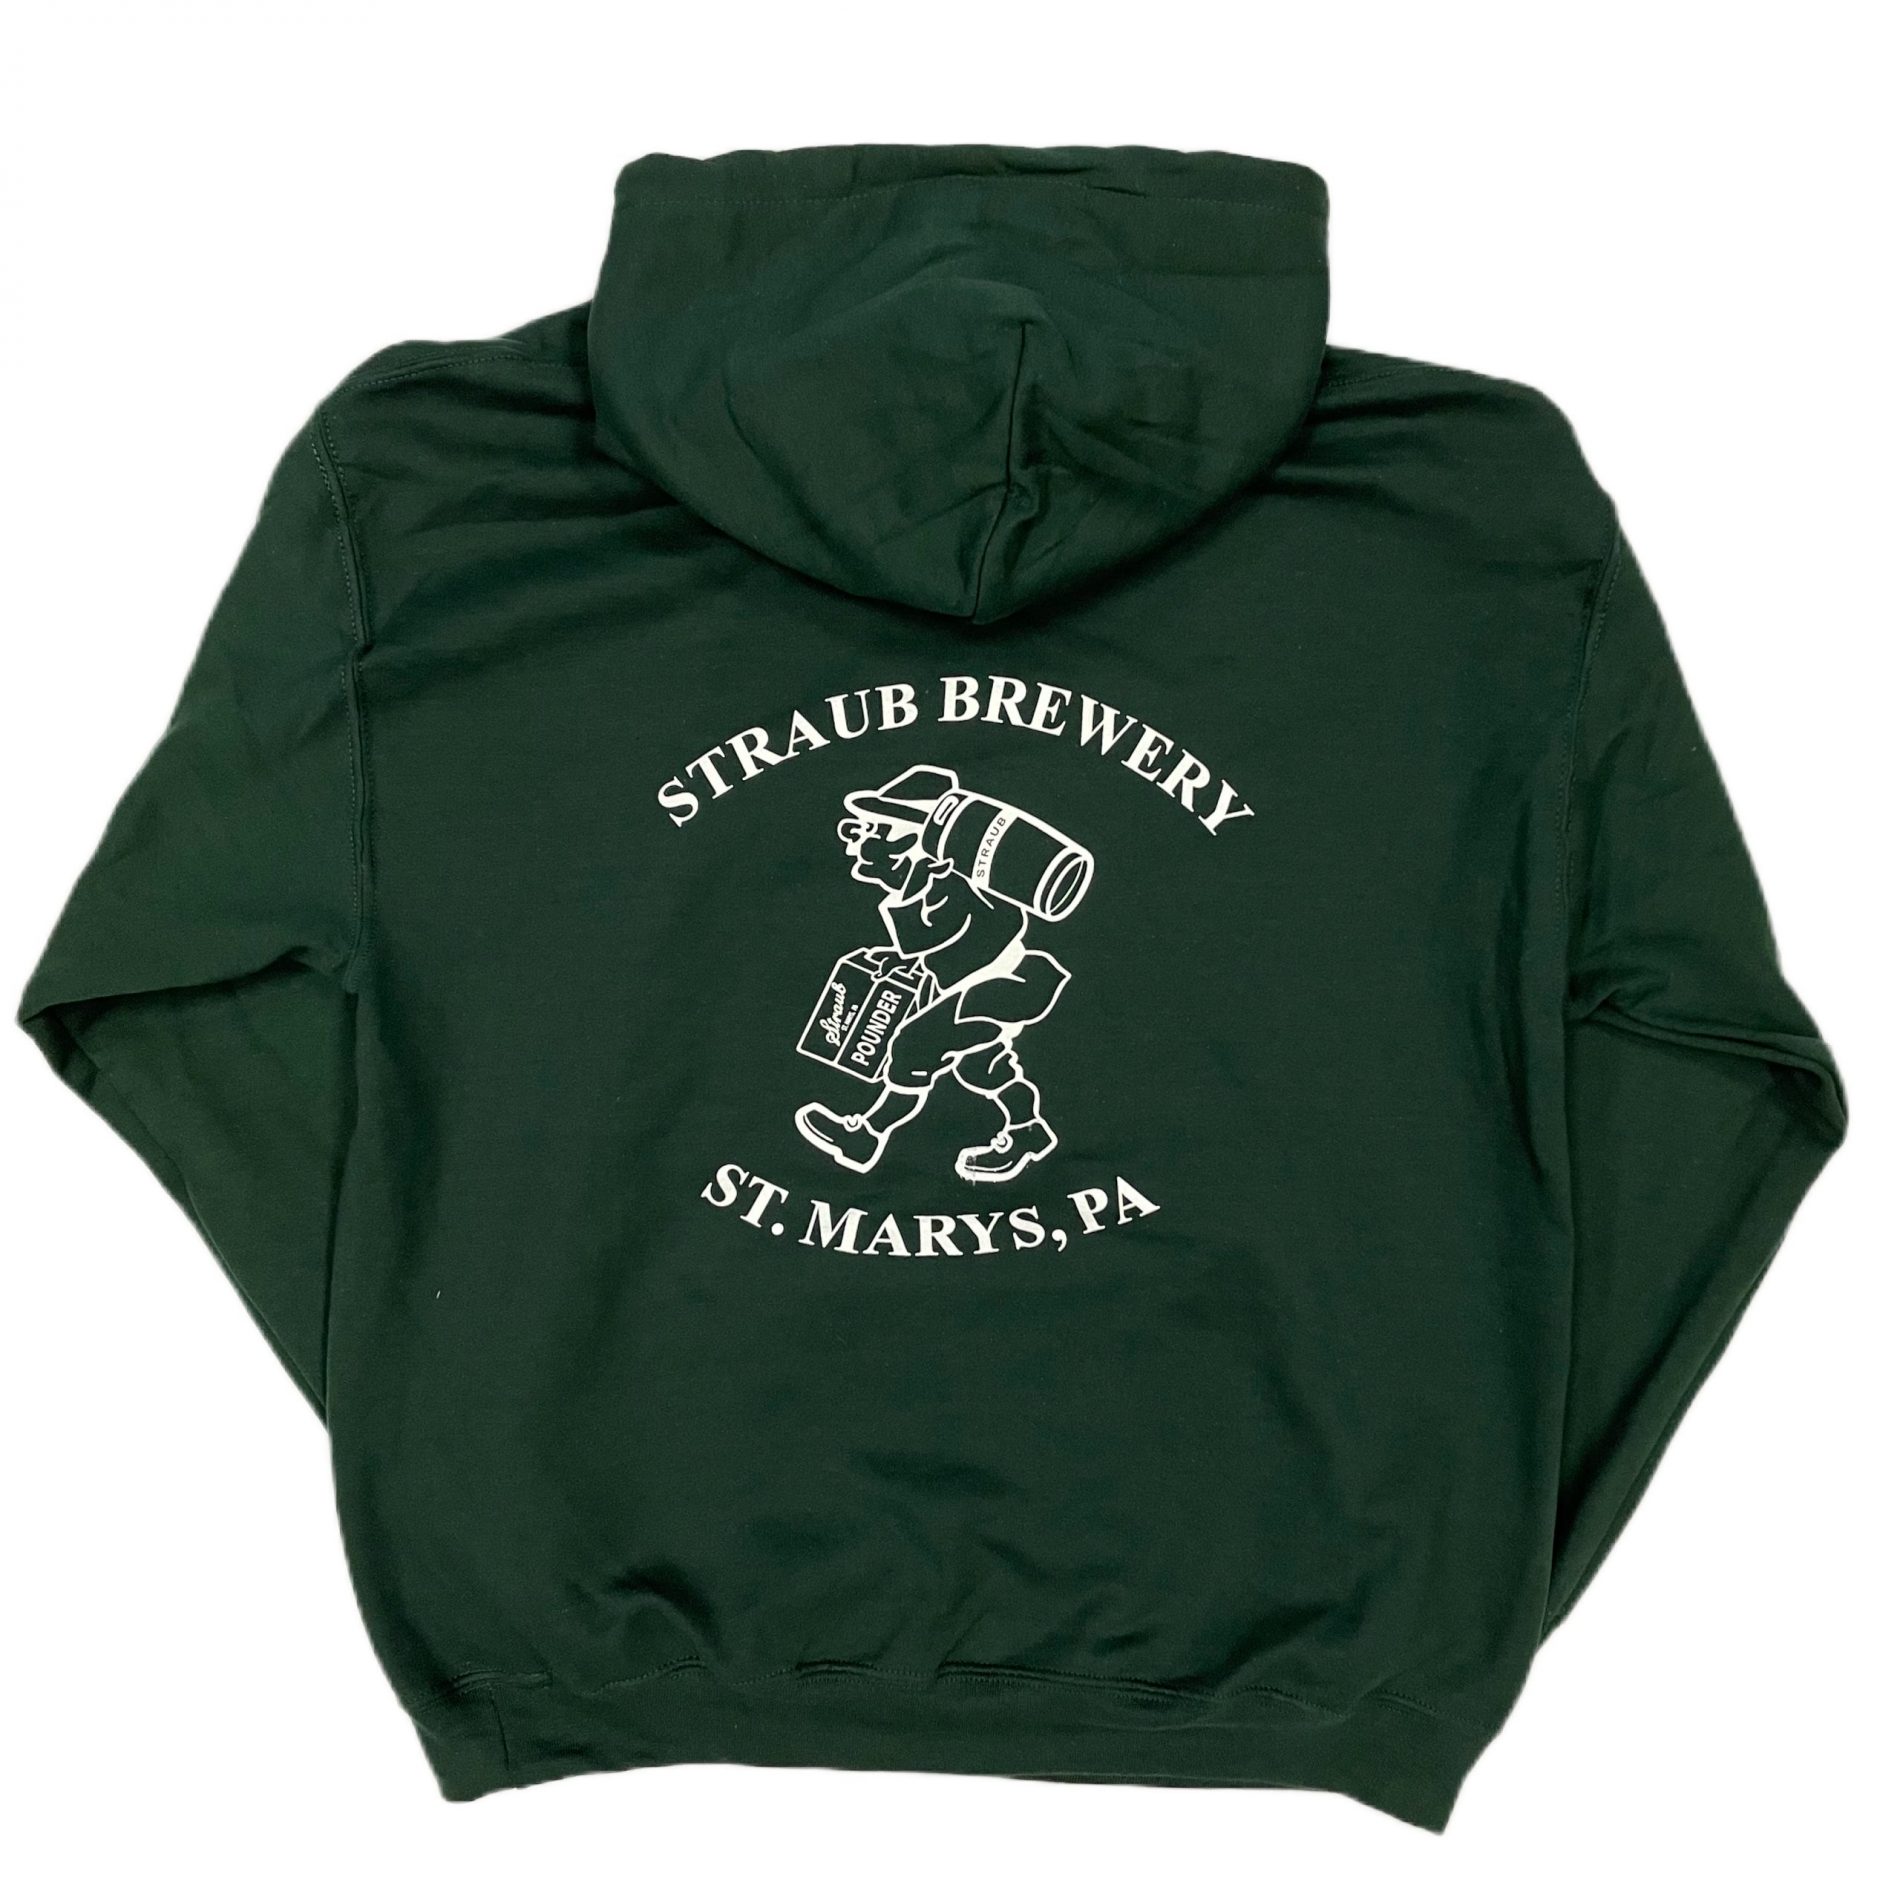 landelijk Machtigen Stevig Dark Green Hoodie Logo front B Man on Back - Straub Brewery